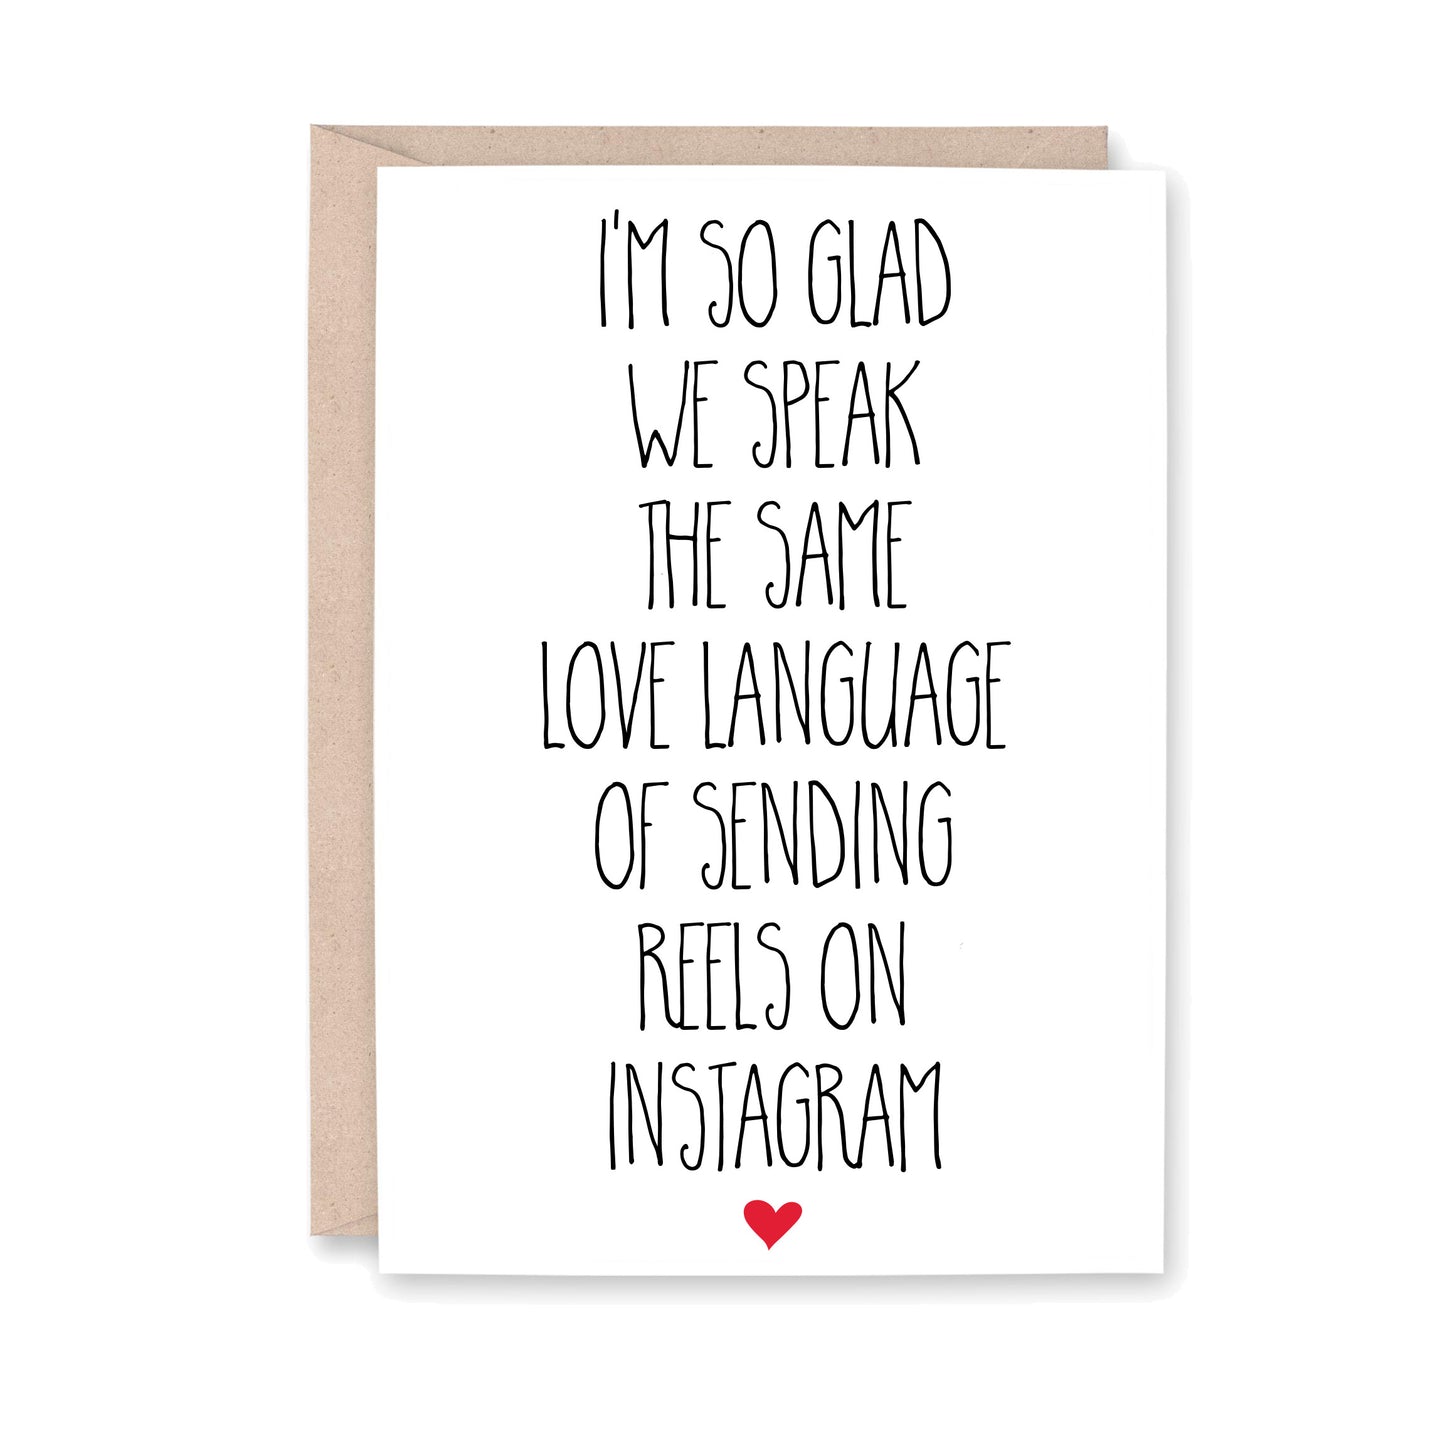 Love Language Reels on Instagram